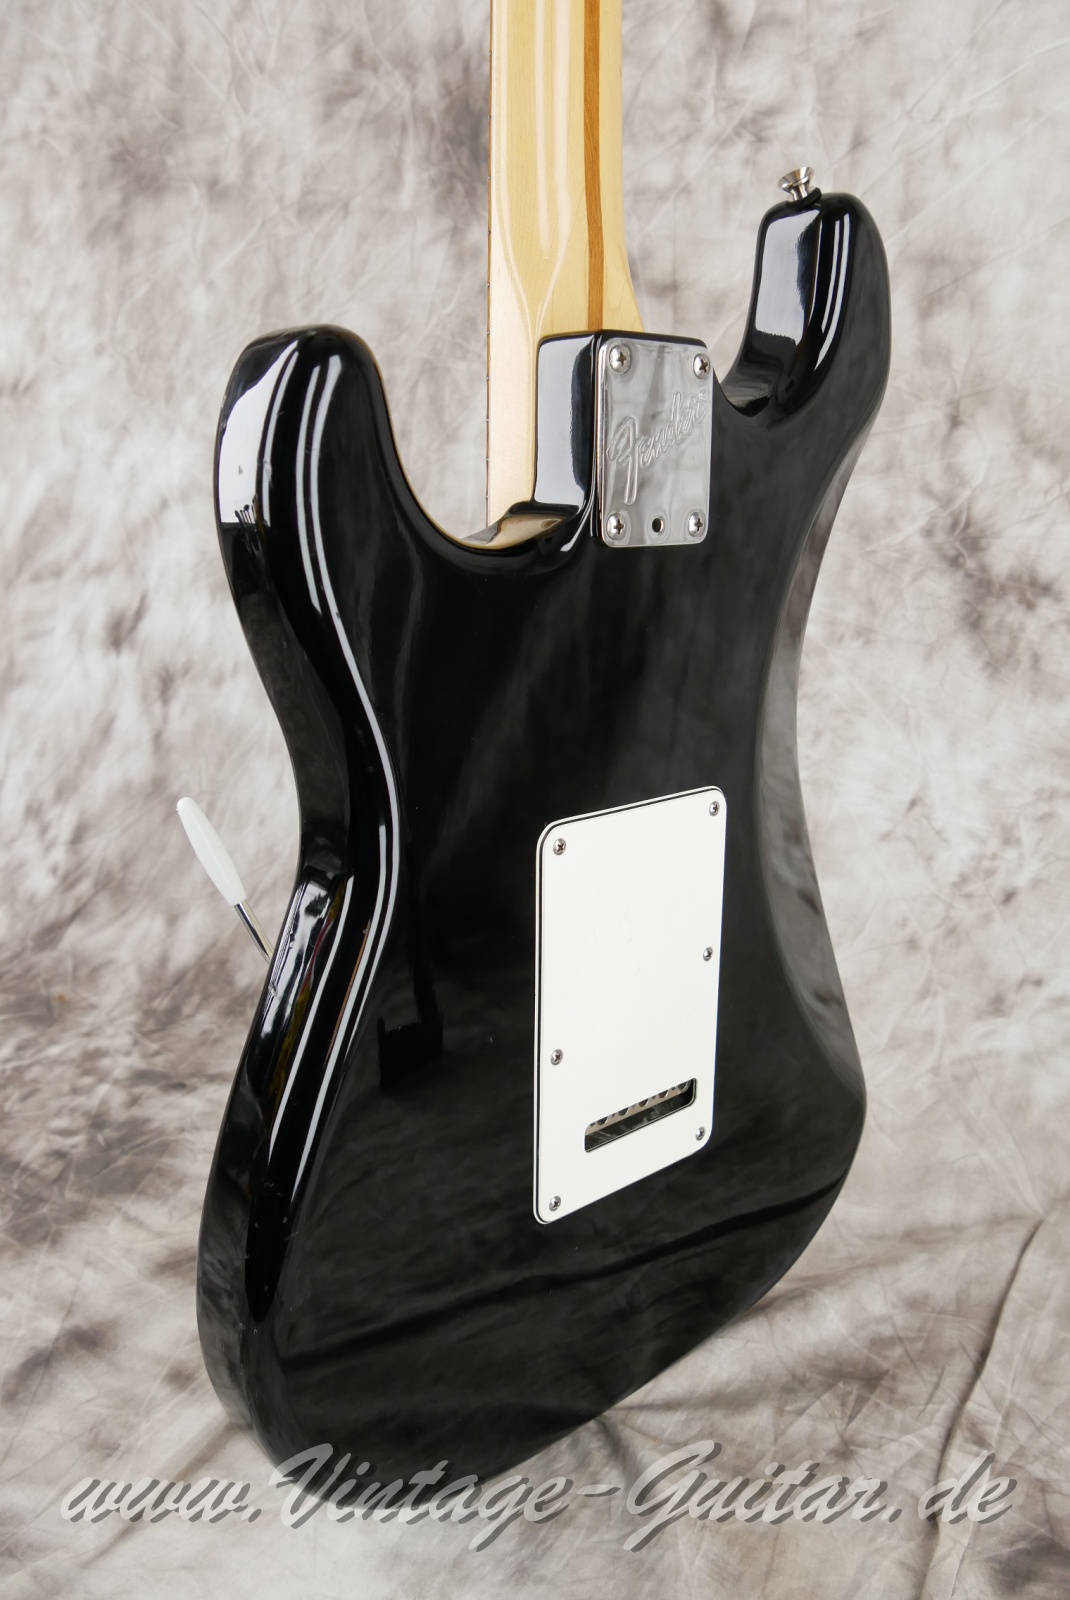 Fender-Stratocaster-American-Standard-1987-black-007.JPG